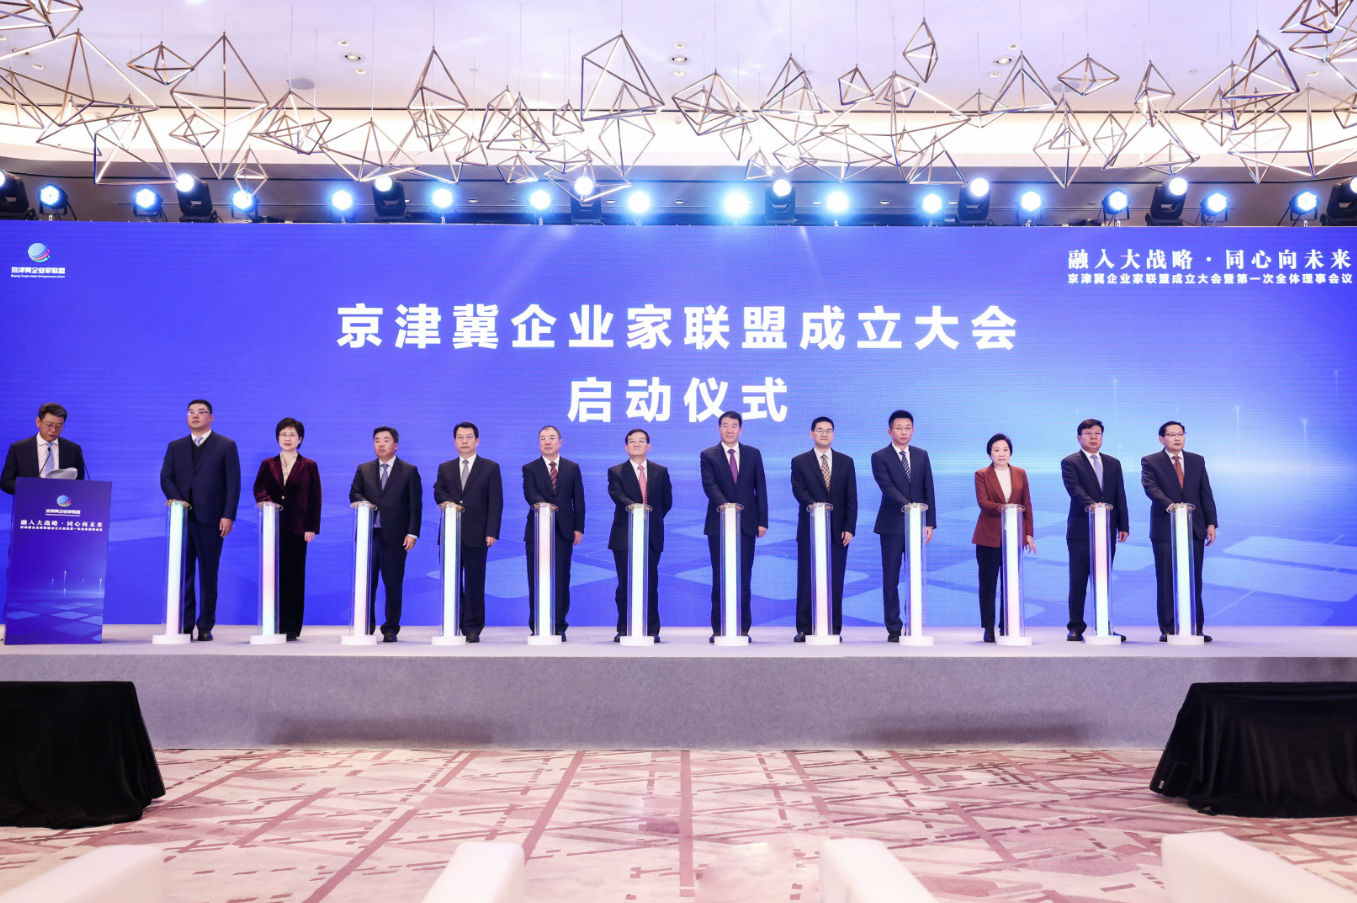 京津冀企业家联盟成立 奇安信集团董事长齐向东担任首届主席